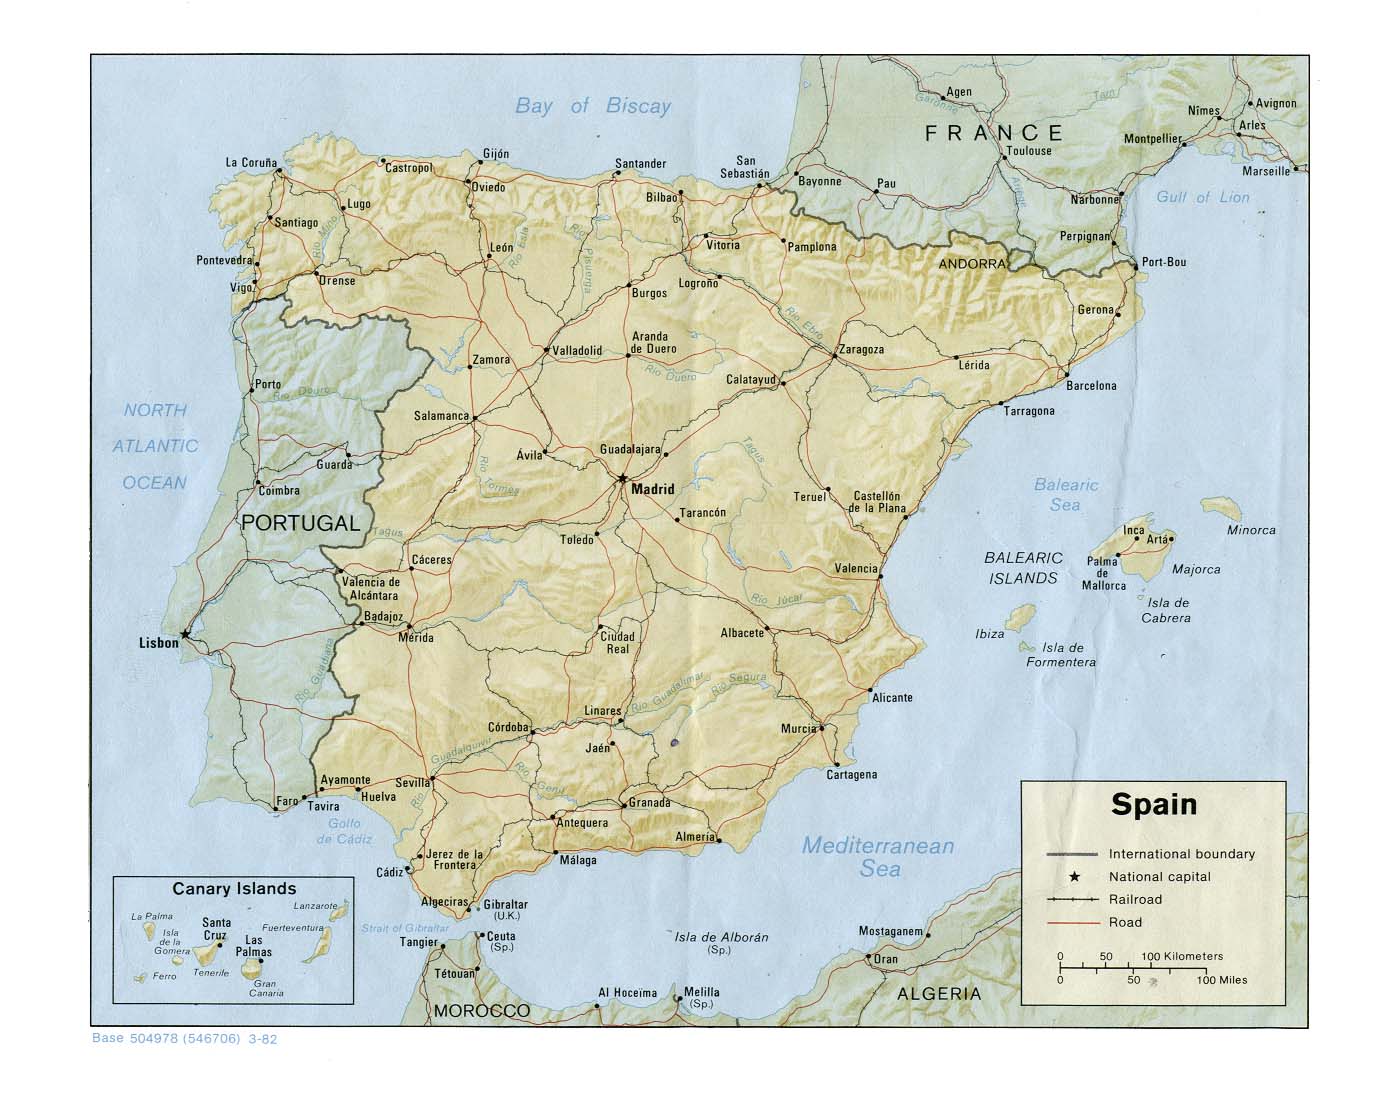 Hier würden Sie die Iberienkarte sehen.